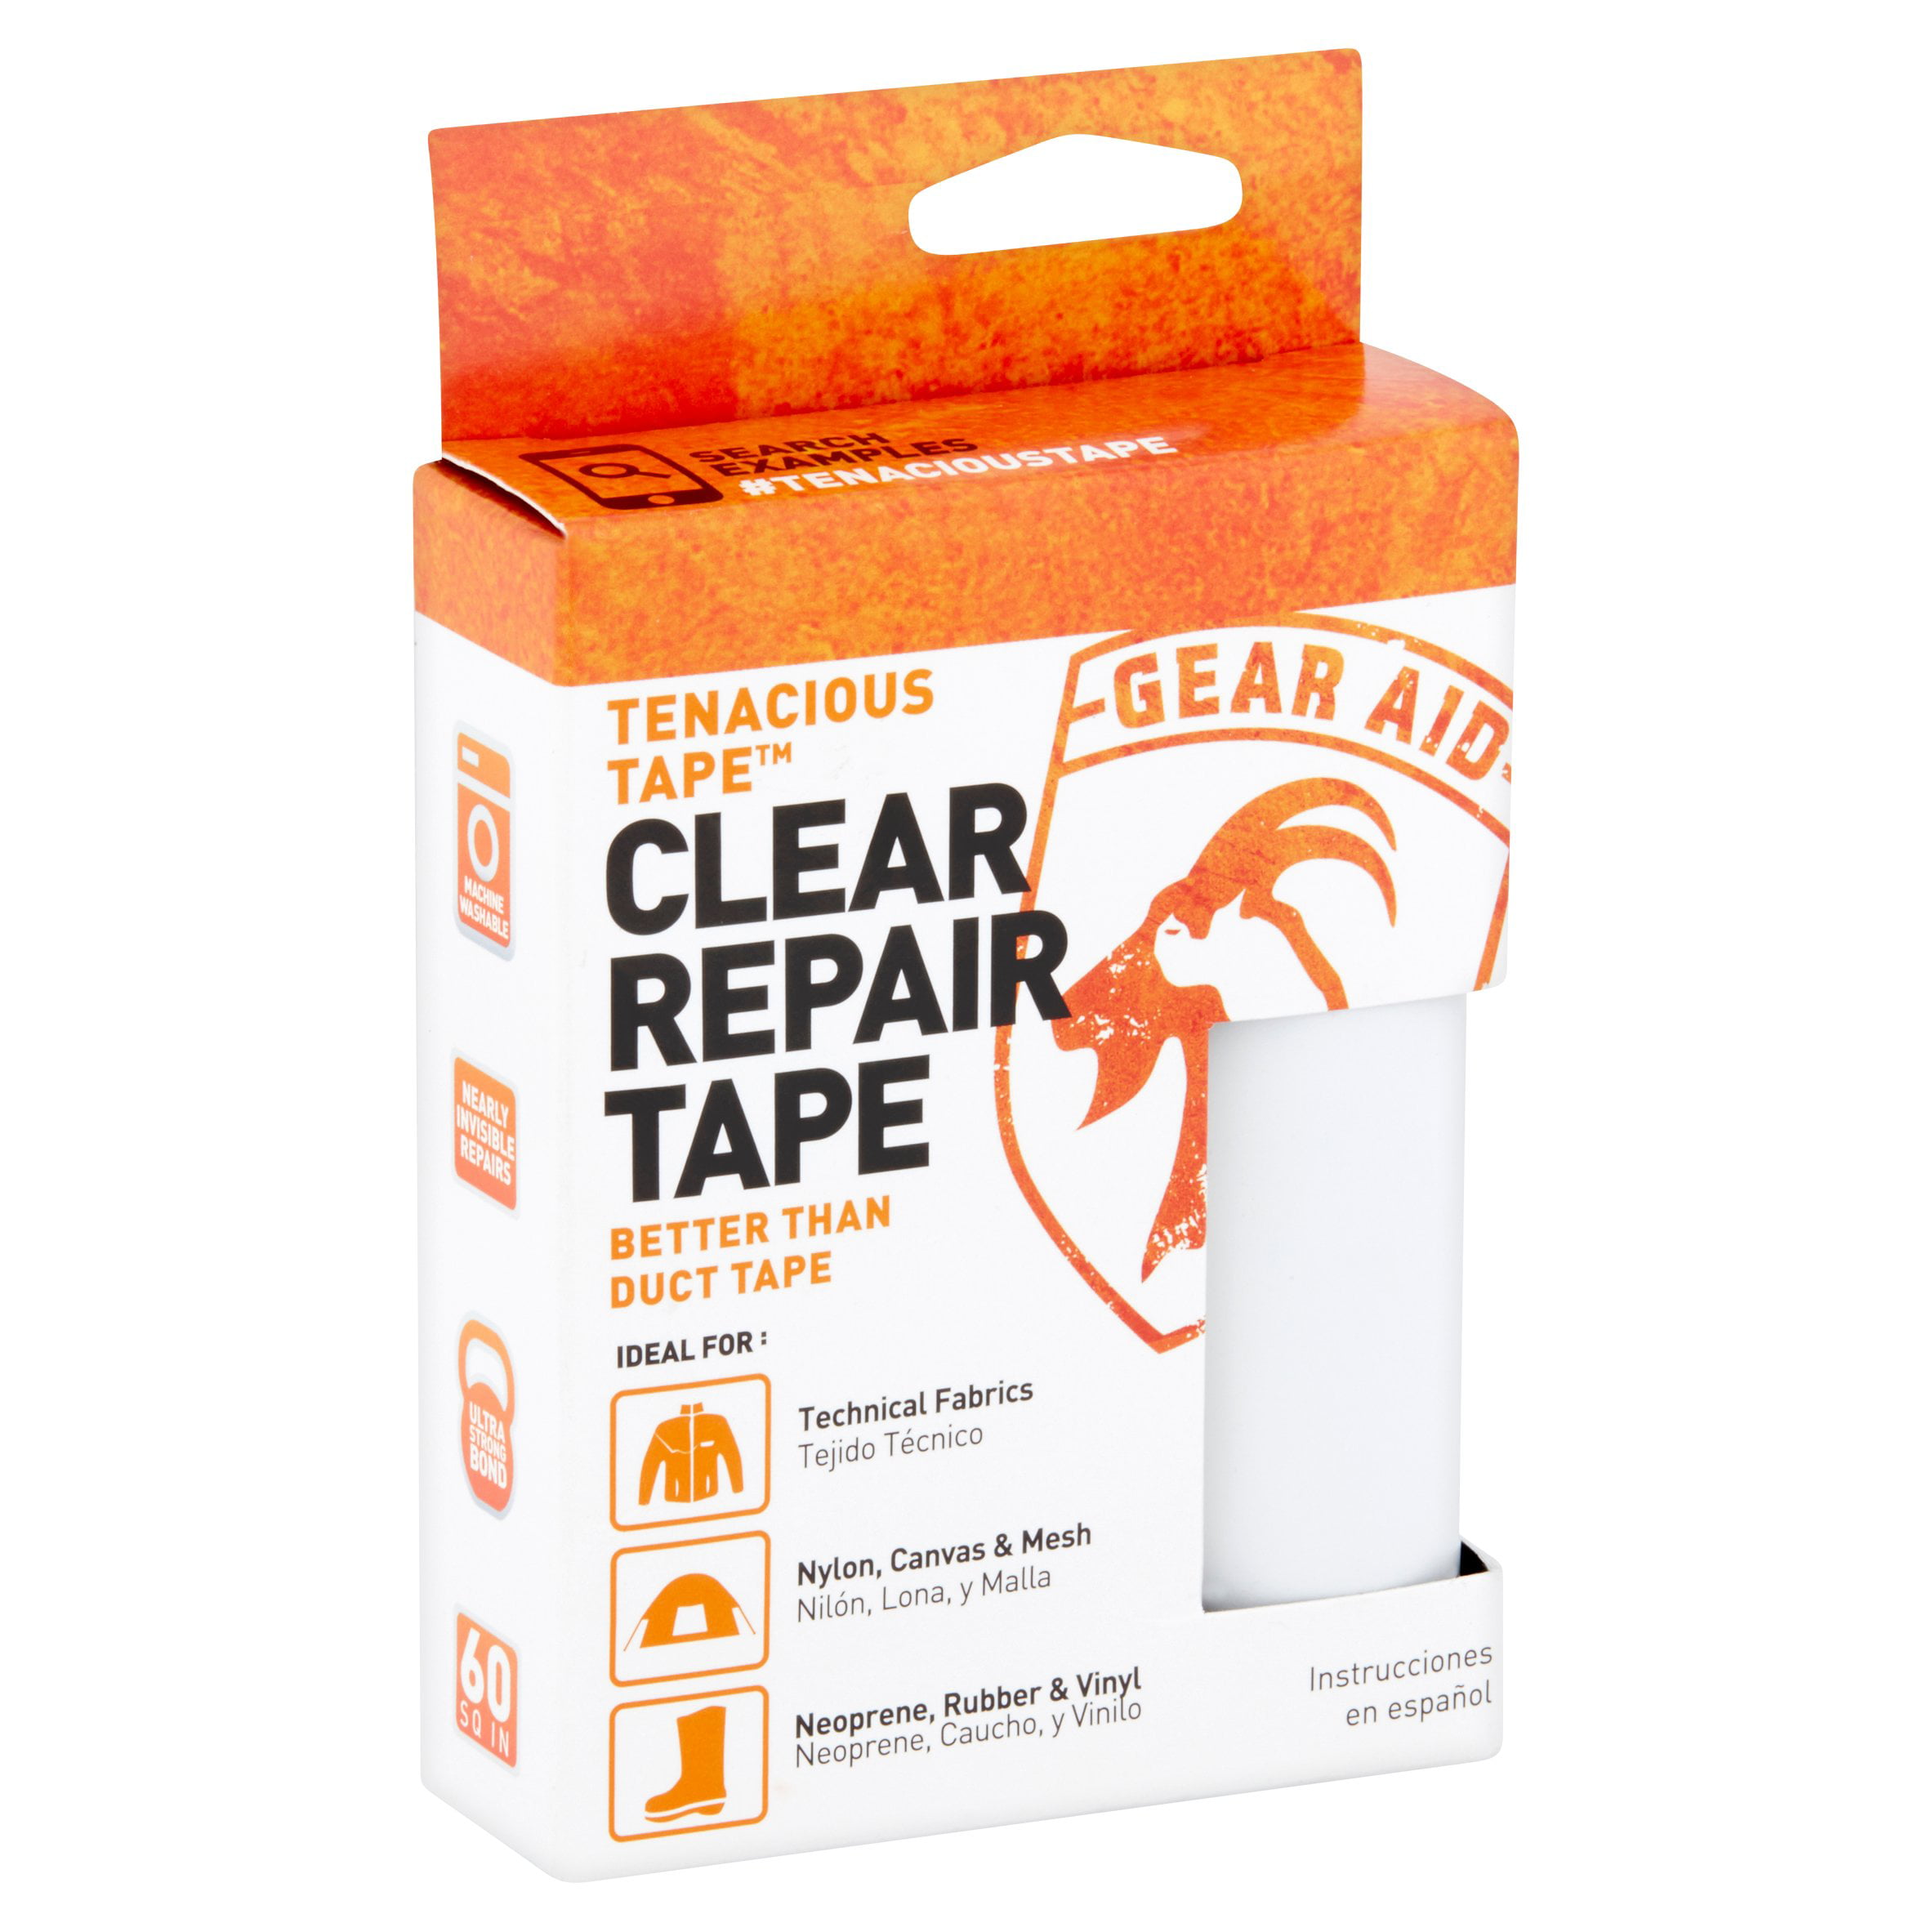 Tenacious Tape Clear Repair Tape Walmartcom